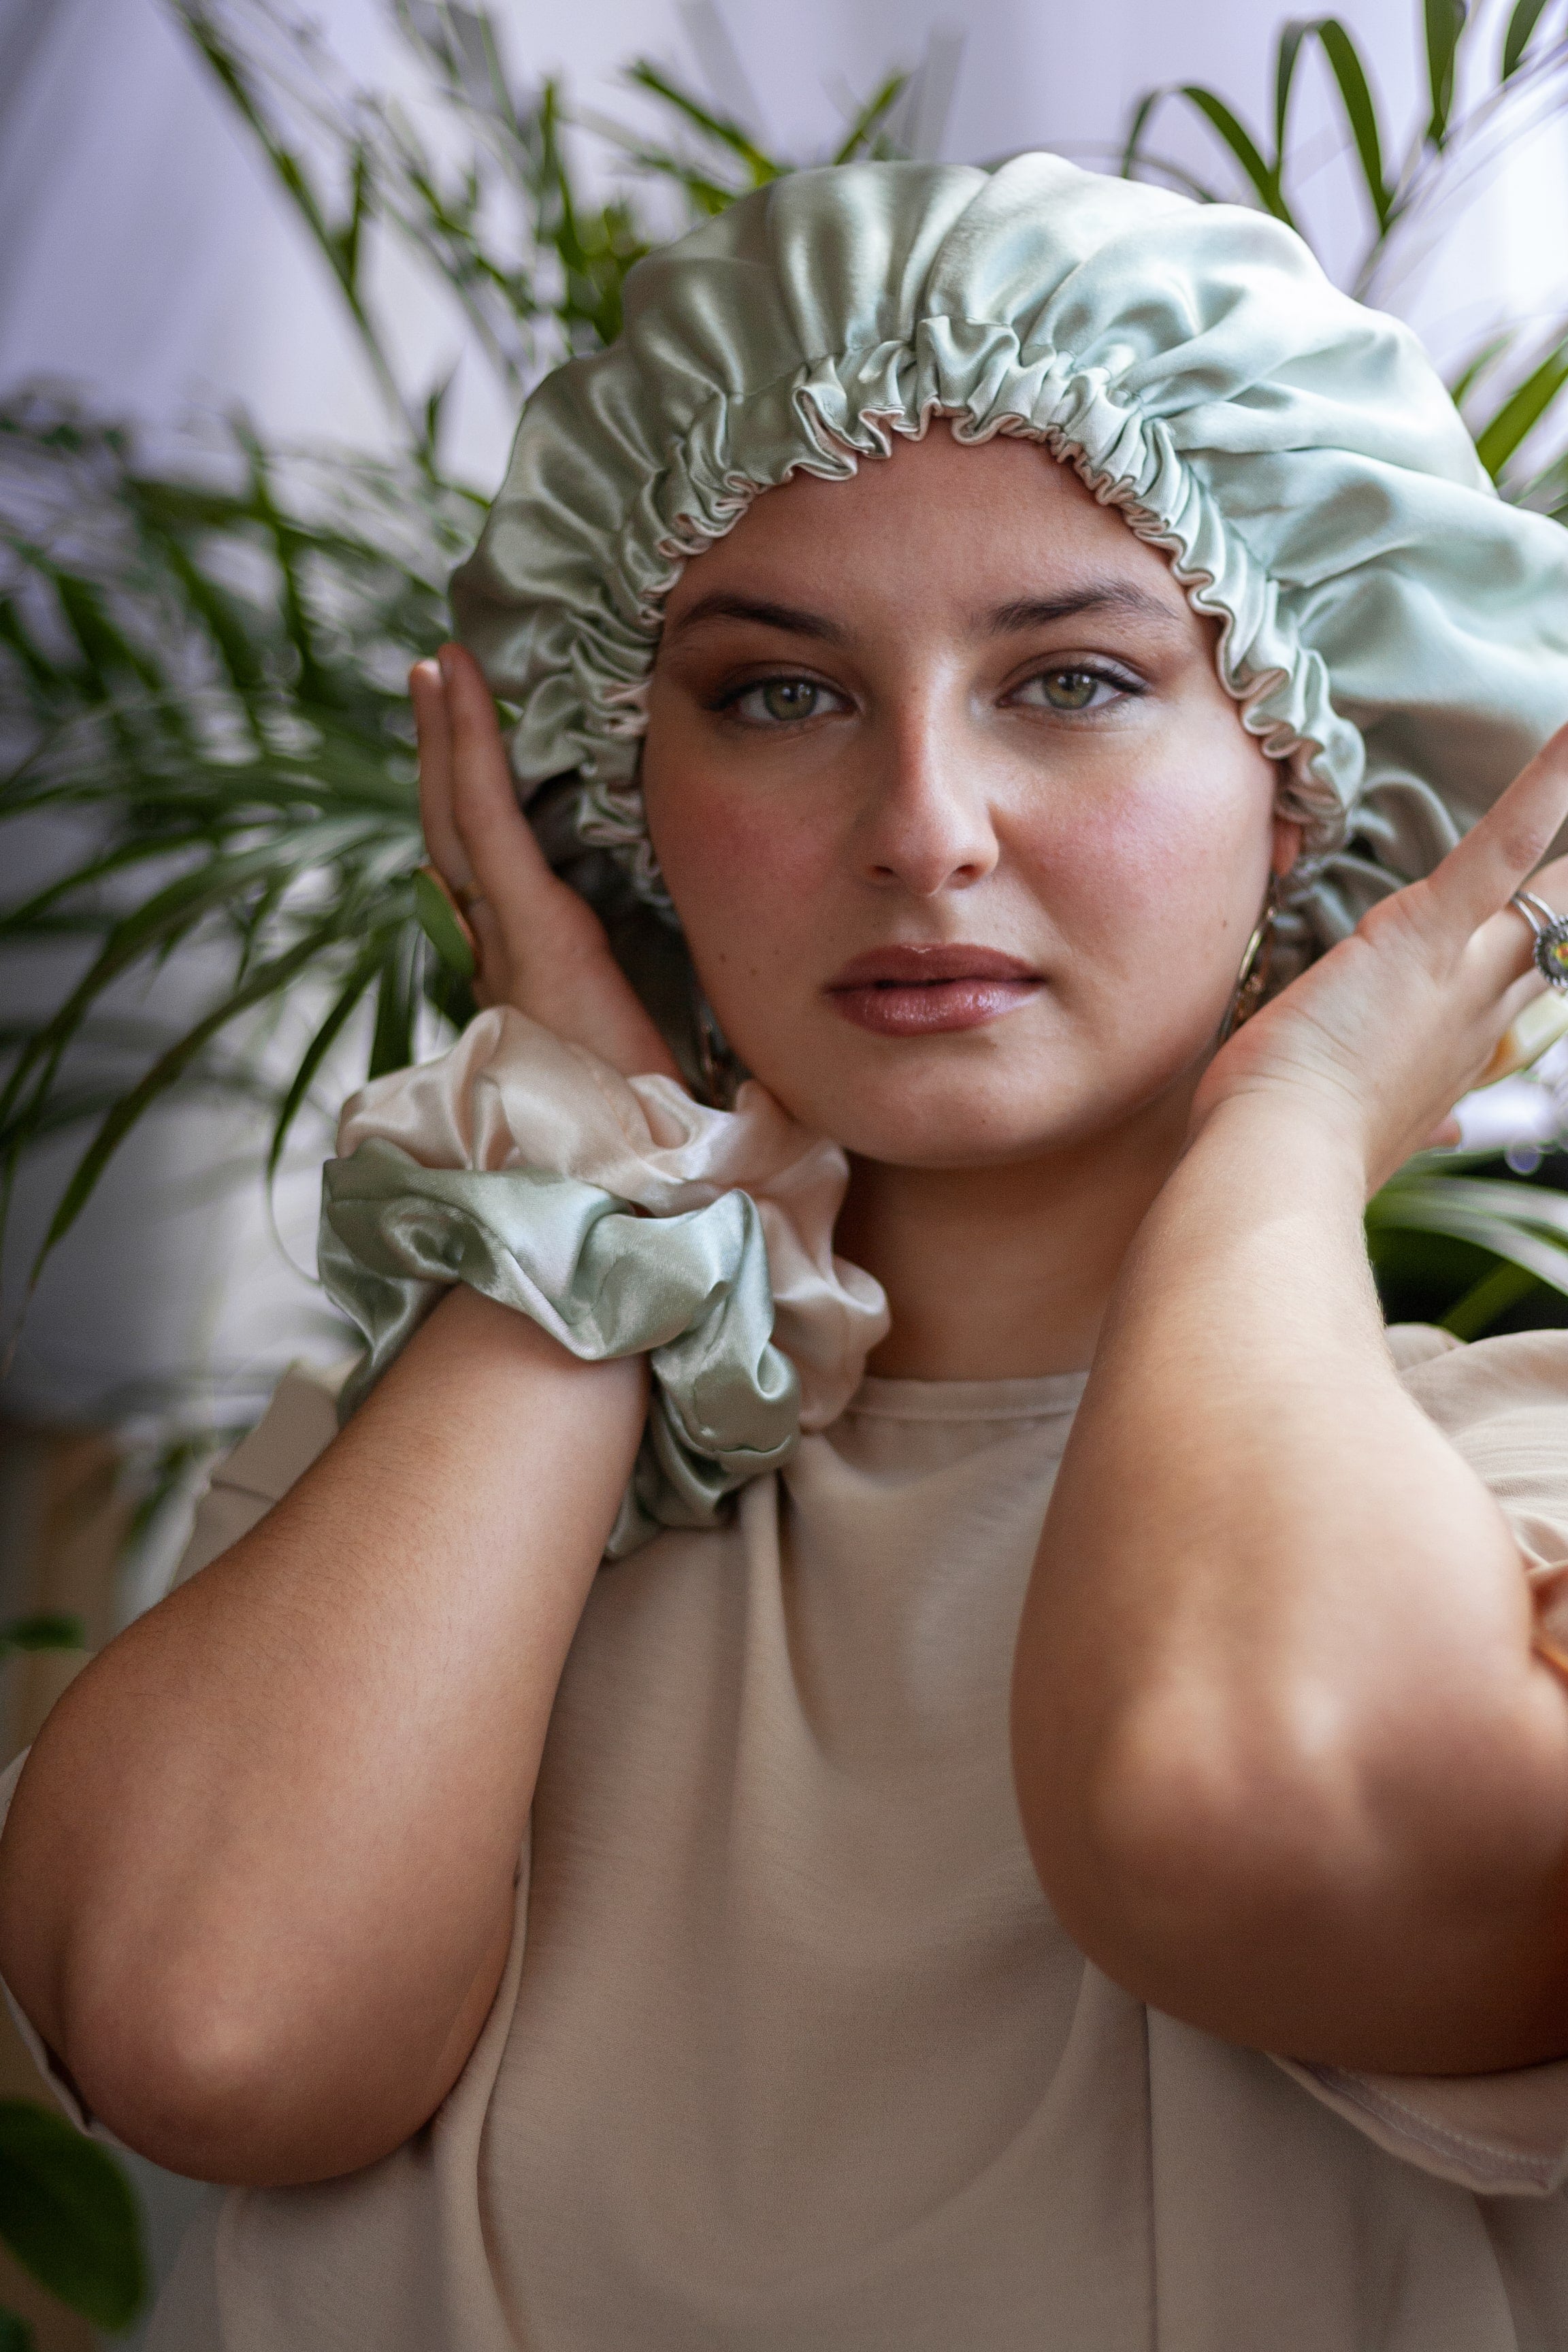 Commandez votre bonnet de nuit en satin artisanal - pas cher – Kaysol  Couture